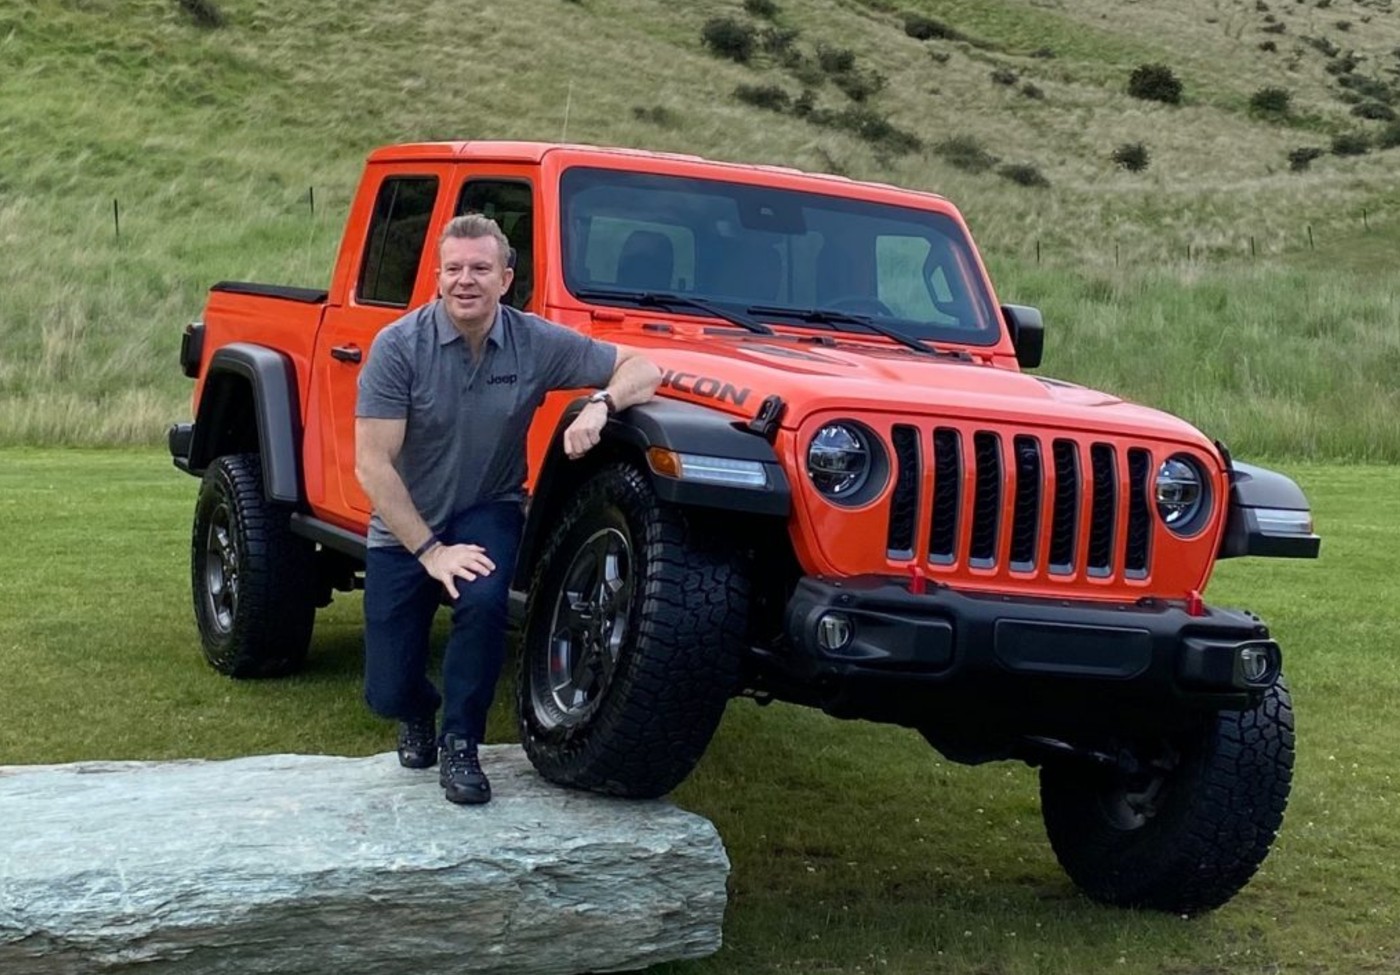 A Jeep tem como objectivo tornar-se líder global no domínio da eletrificação dos SUV, anunciou o CEO da marca, Christian Meunier